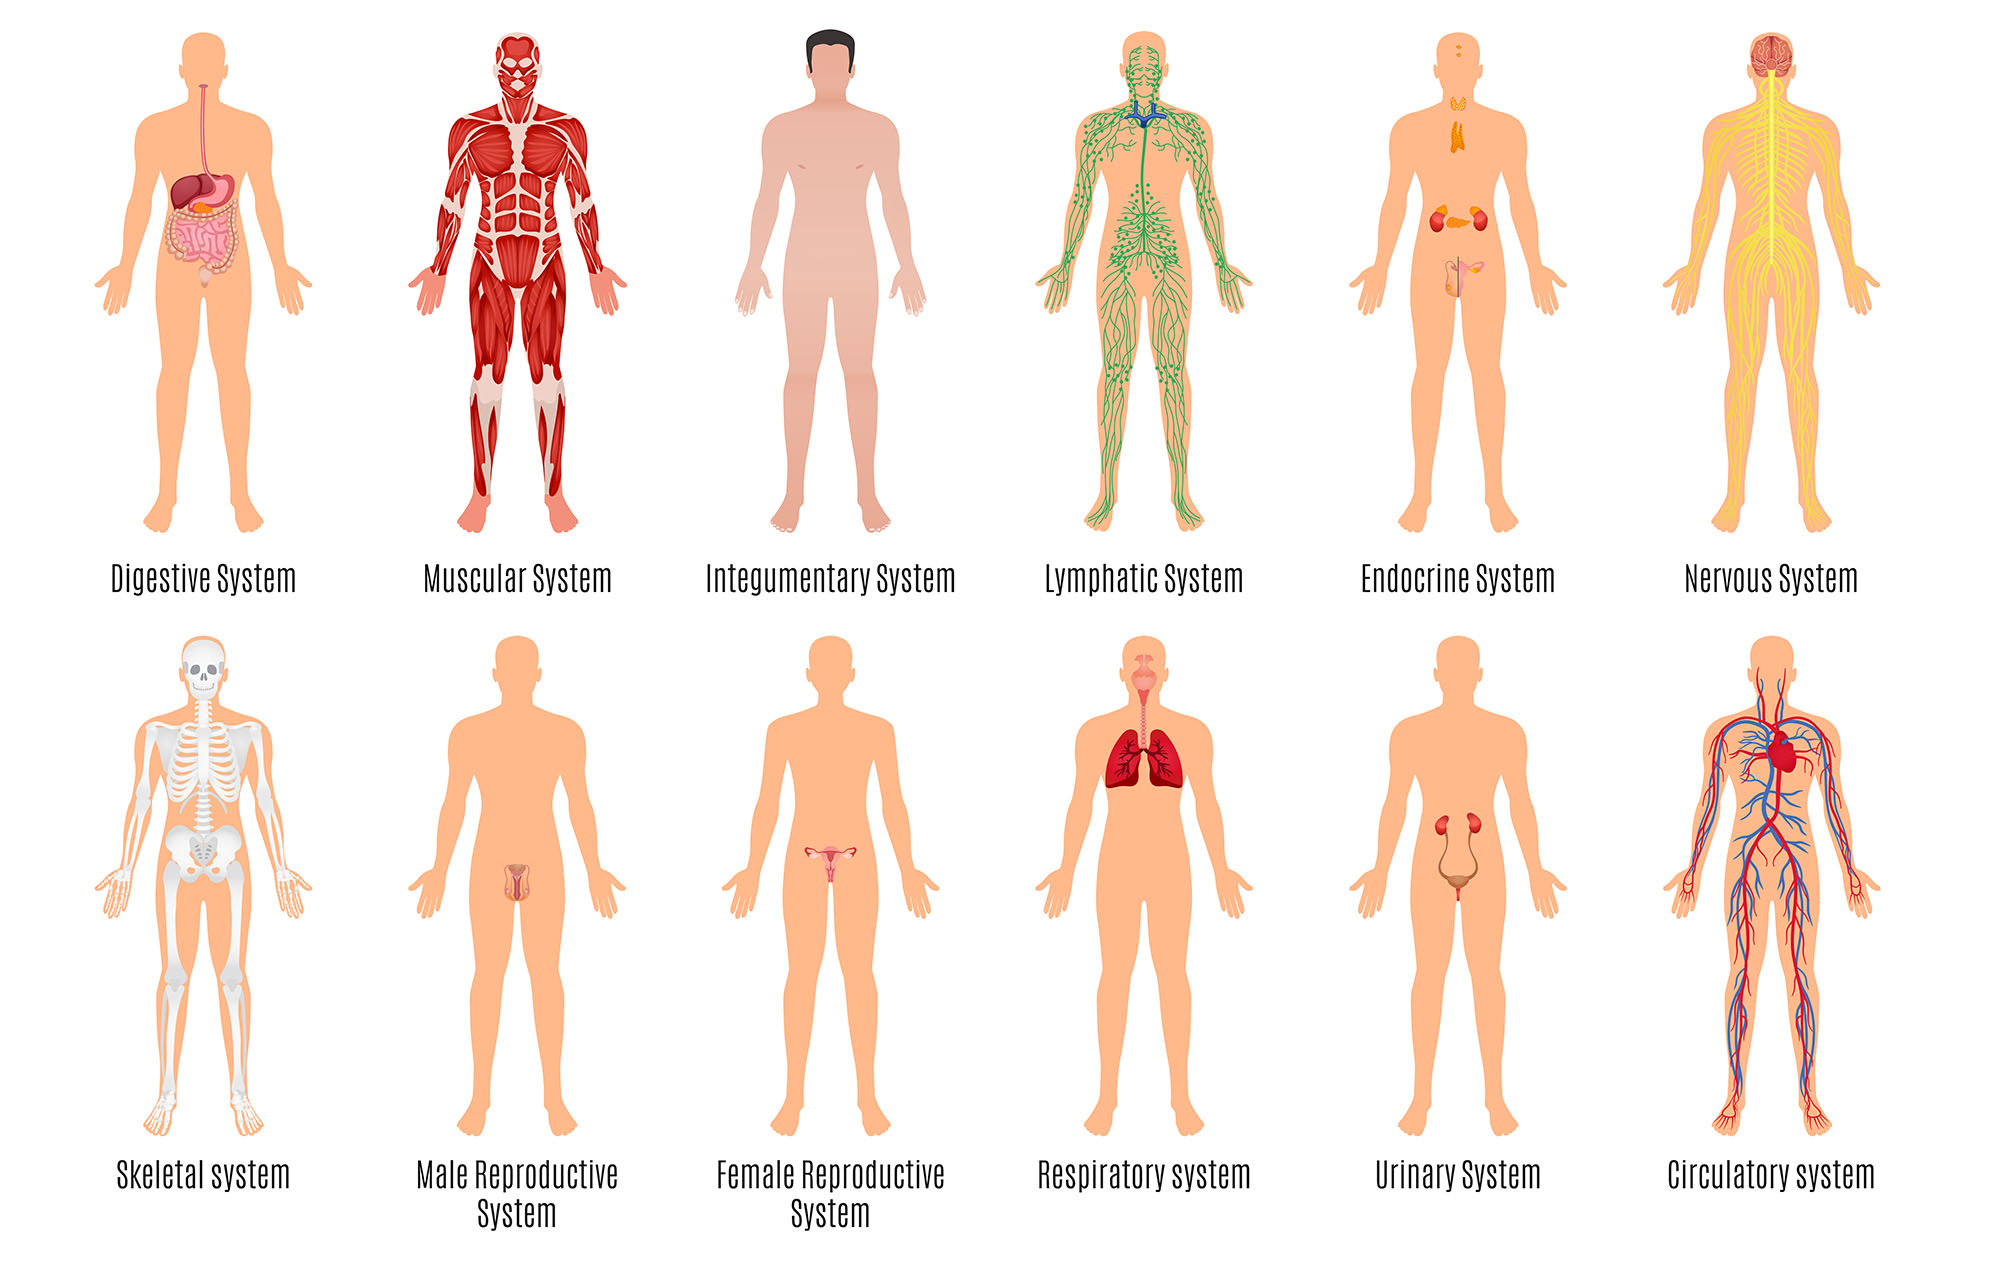 2a1-organ-systems-humanbio